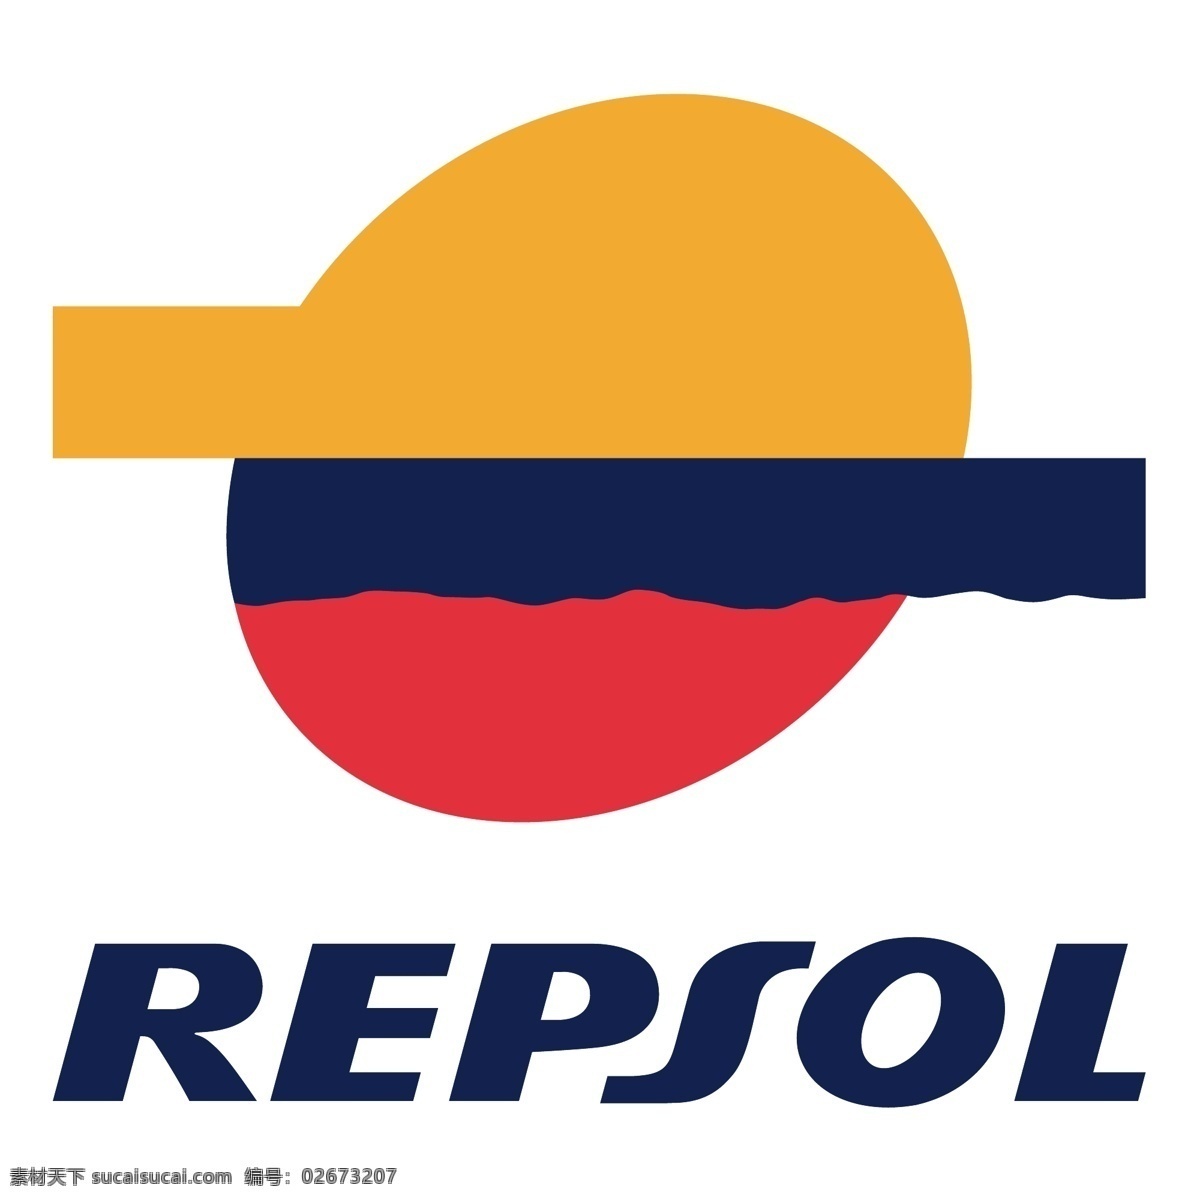 雷普索尔0 标志 repsol 雷普 索尔 矢量 logo 向量 ypf 矢量图 建筑家居